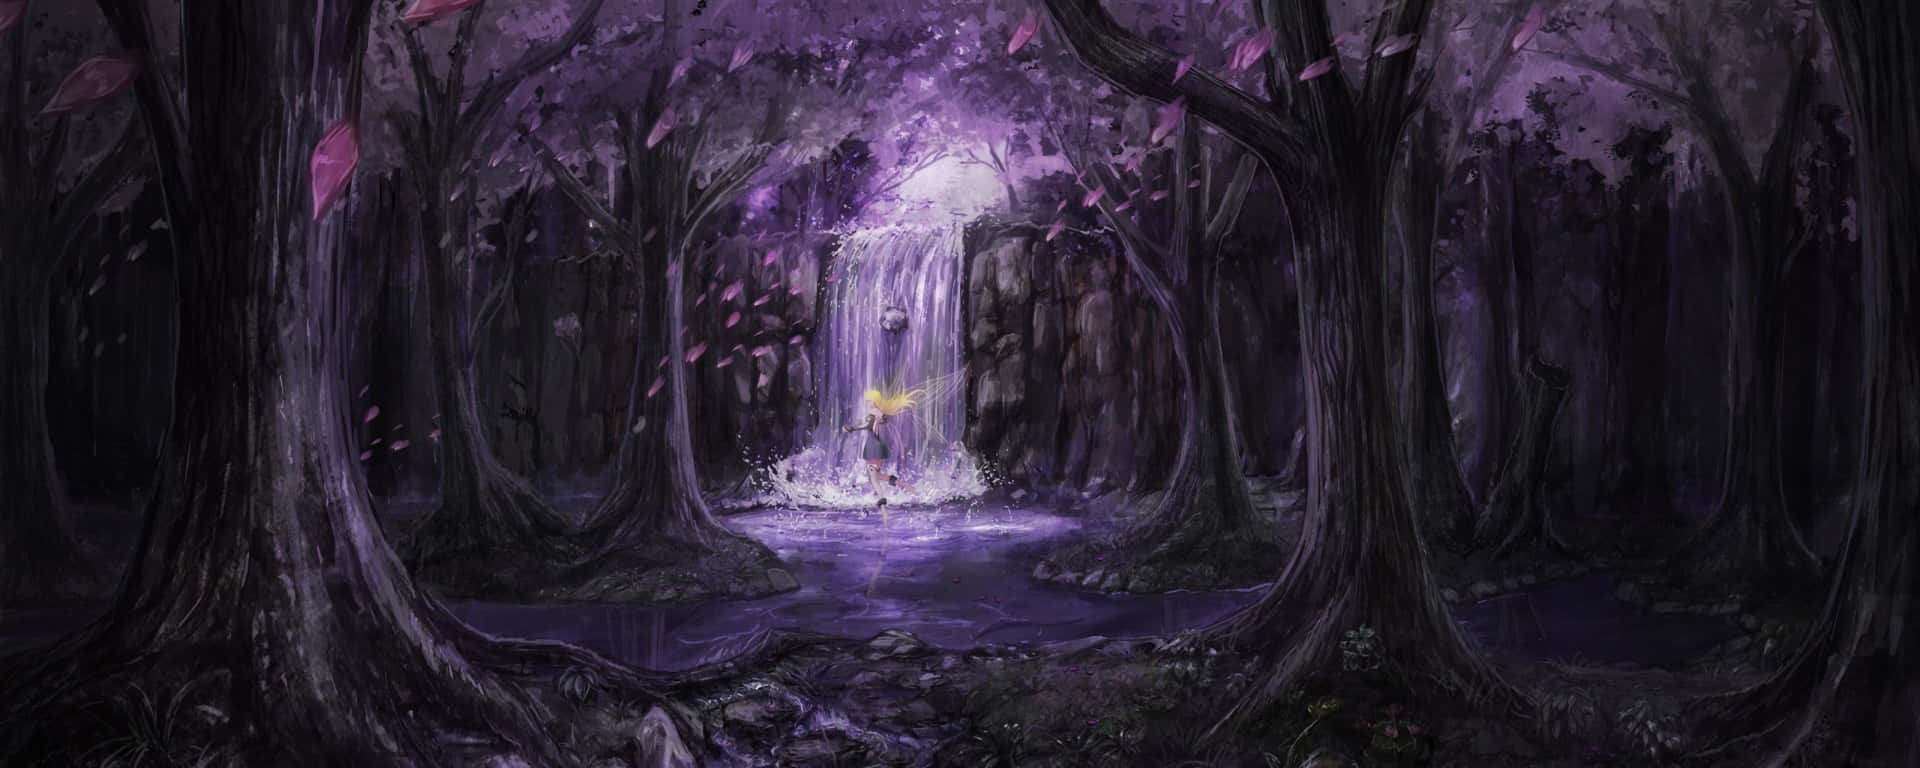 Dubbelskärm Anime Fairy Magisk Skog. Wallpaper